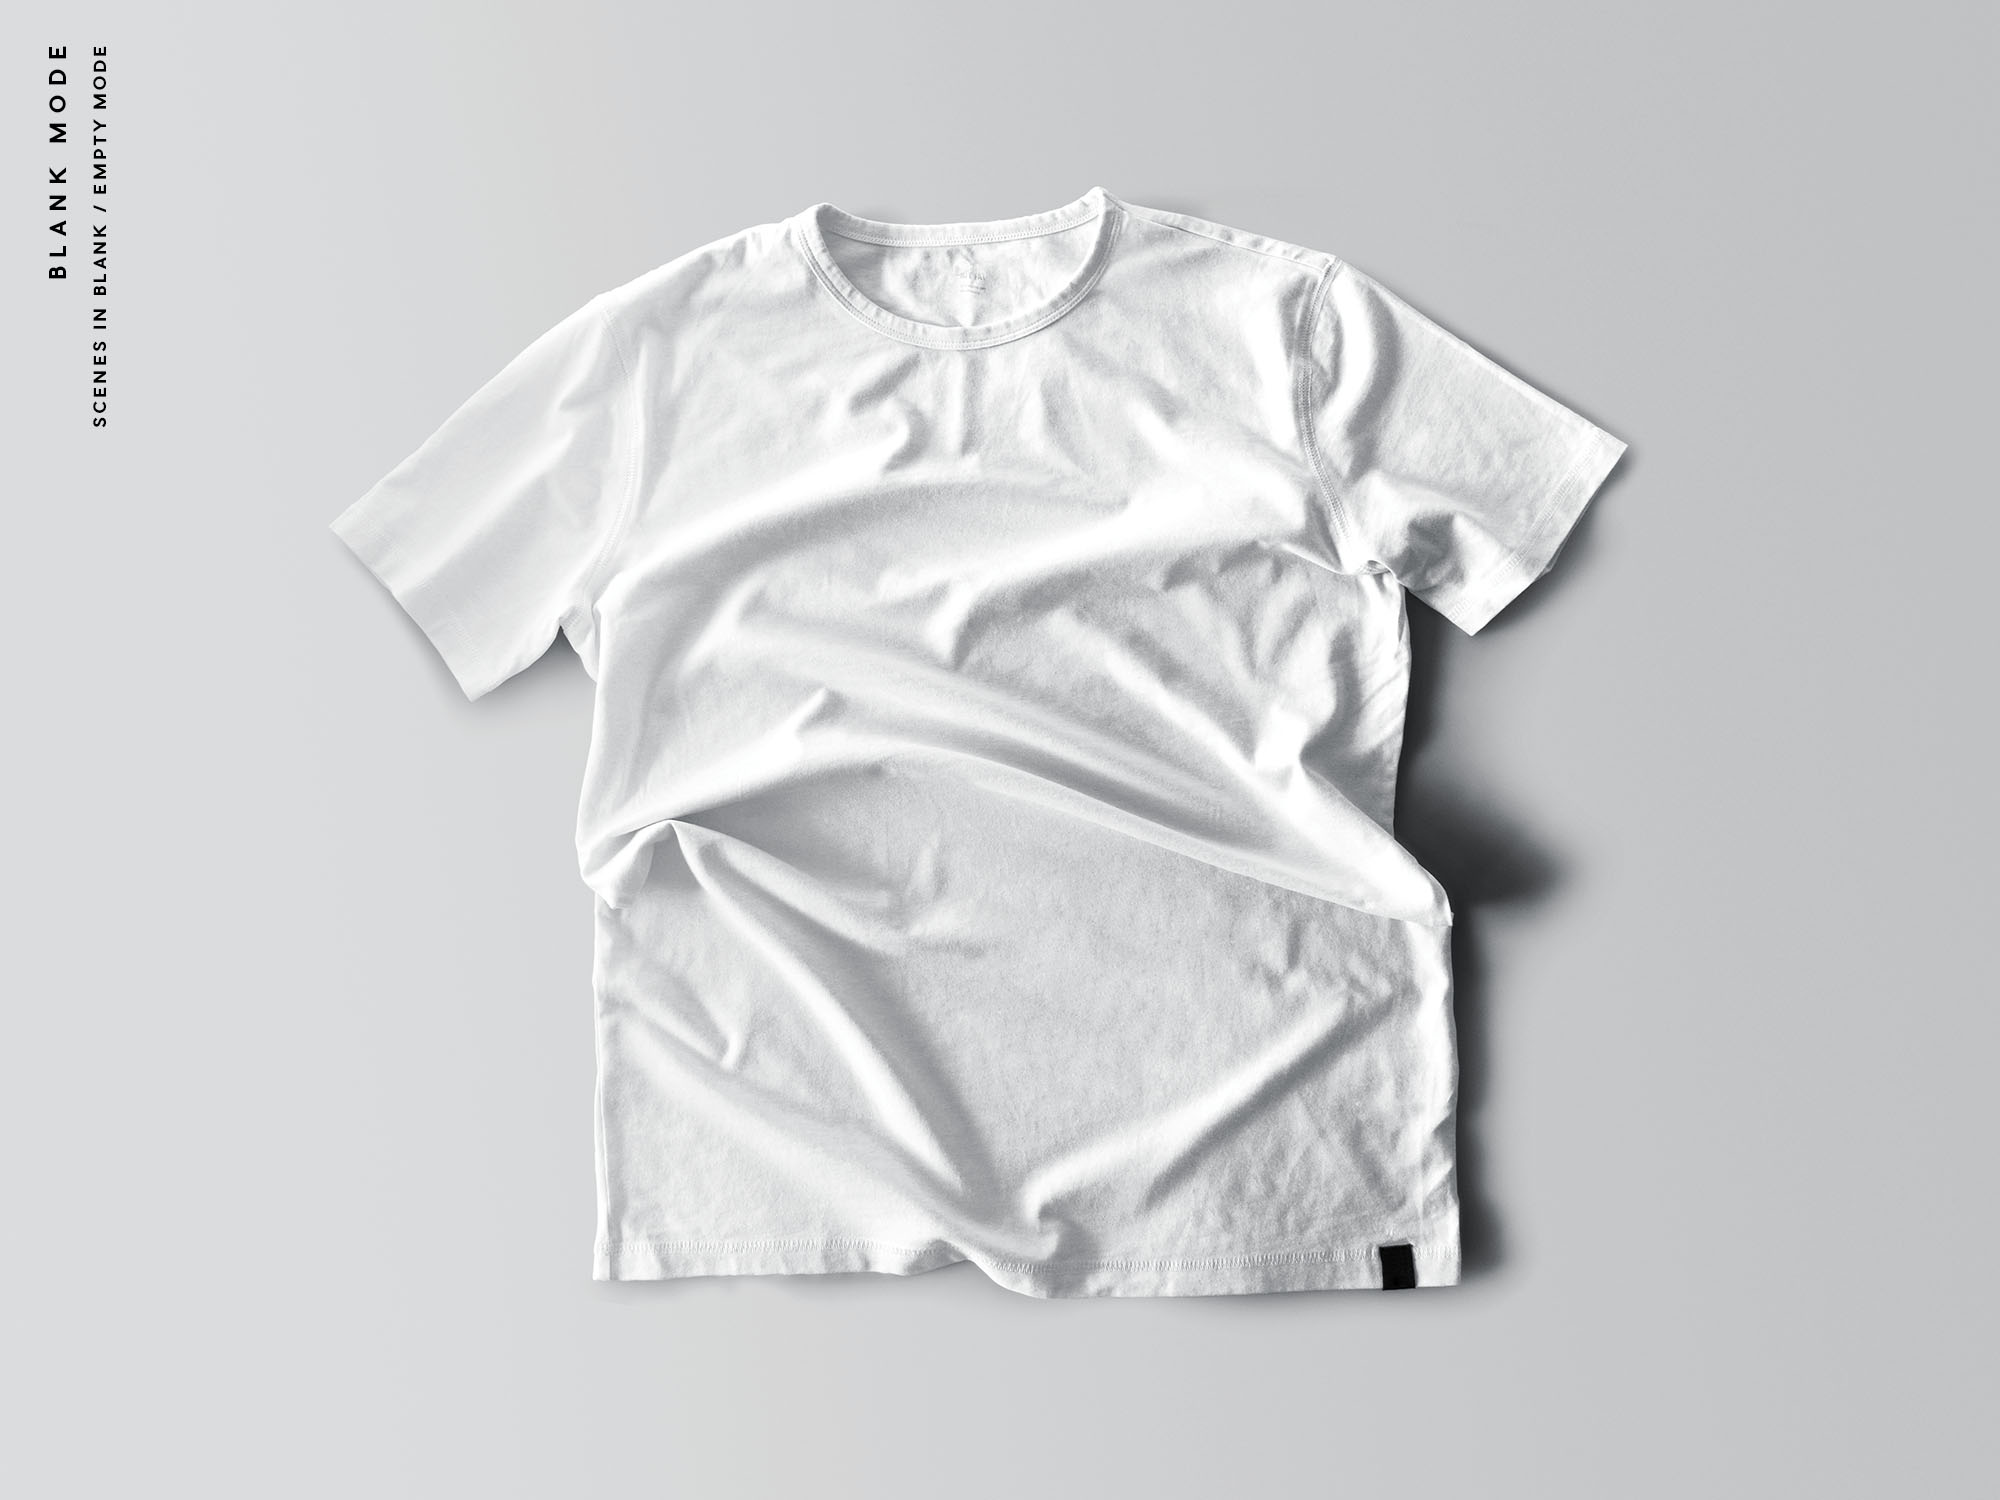 9 个褶皱T恤设计效果图样机 9 T-Shirt Mockups 样机素材 第2张